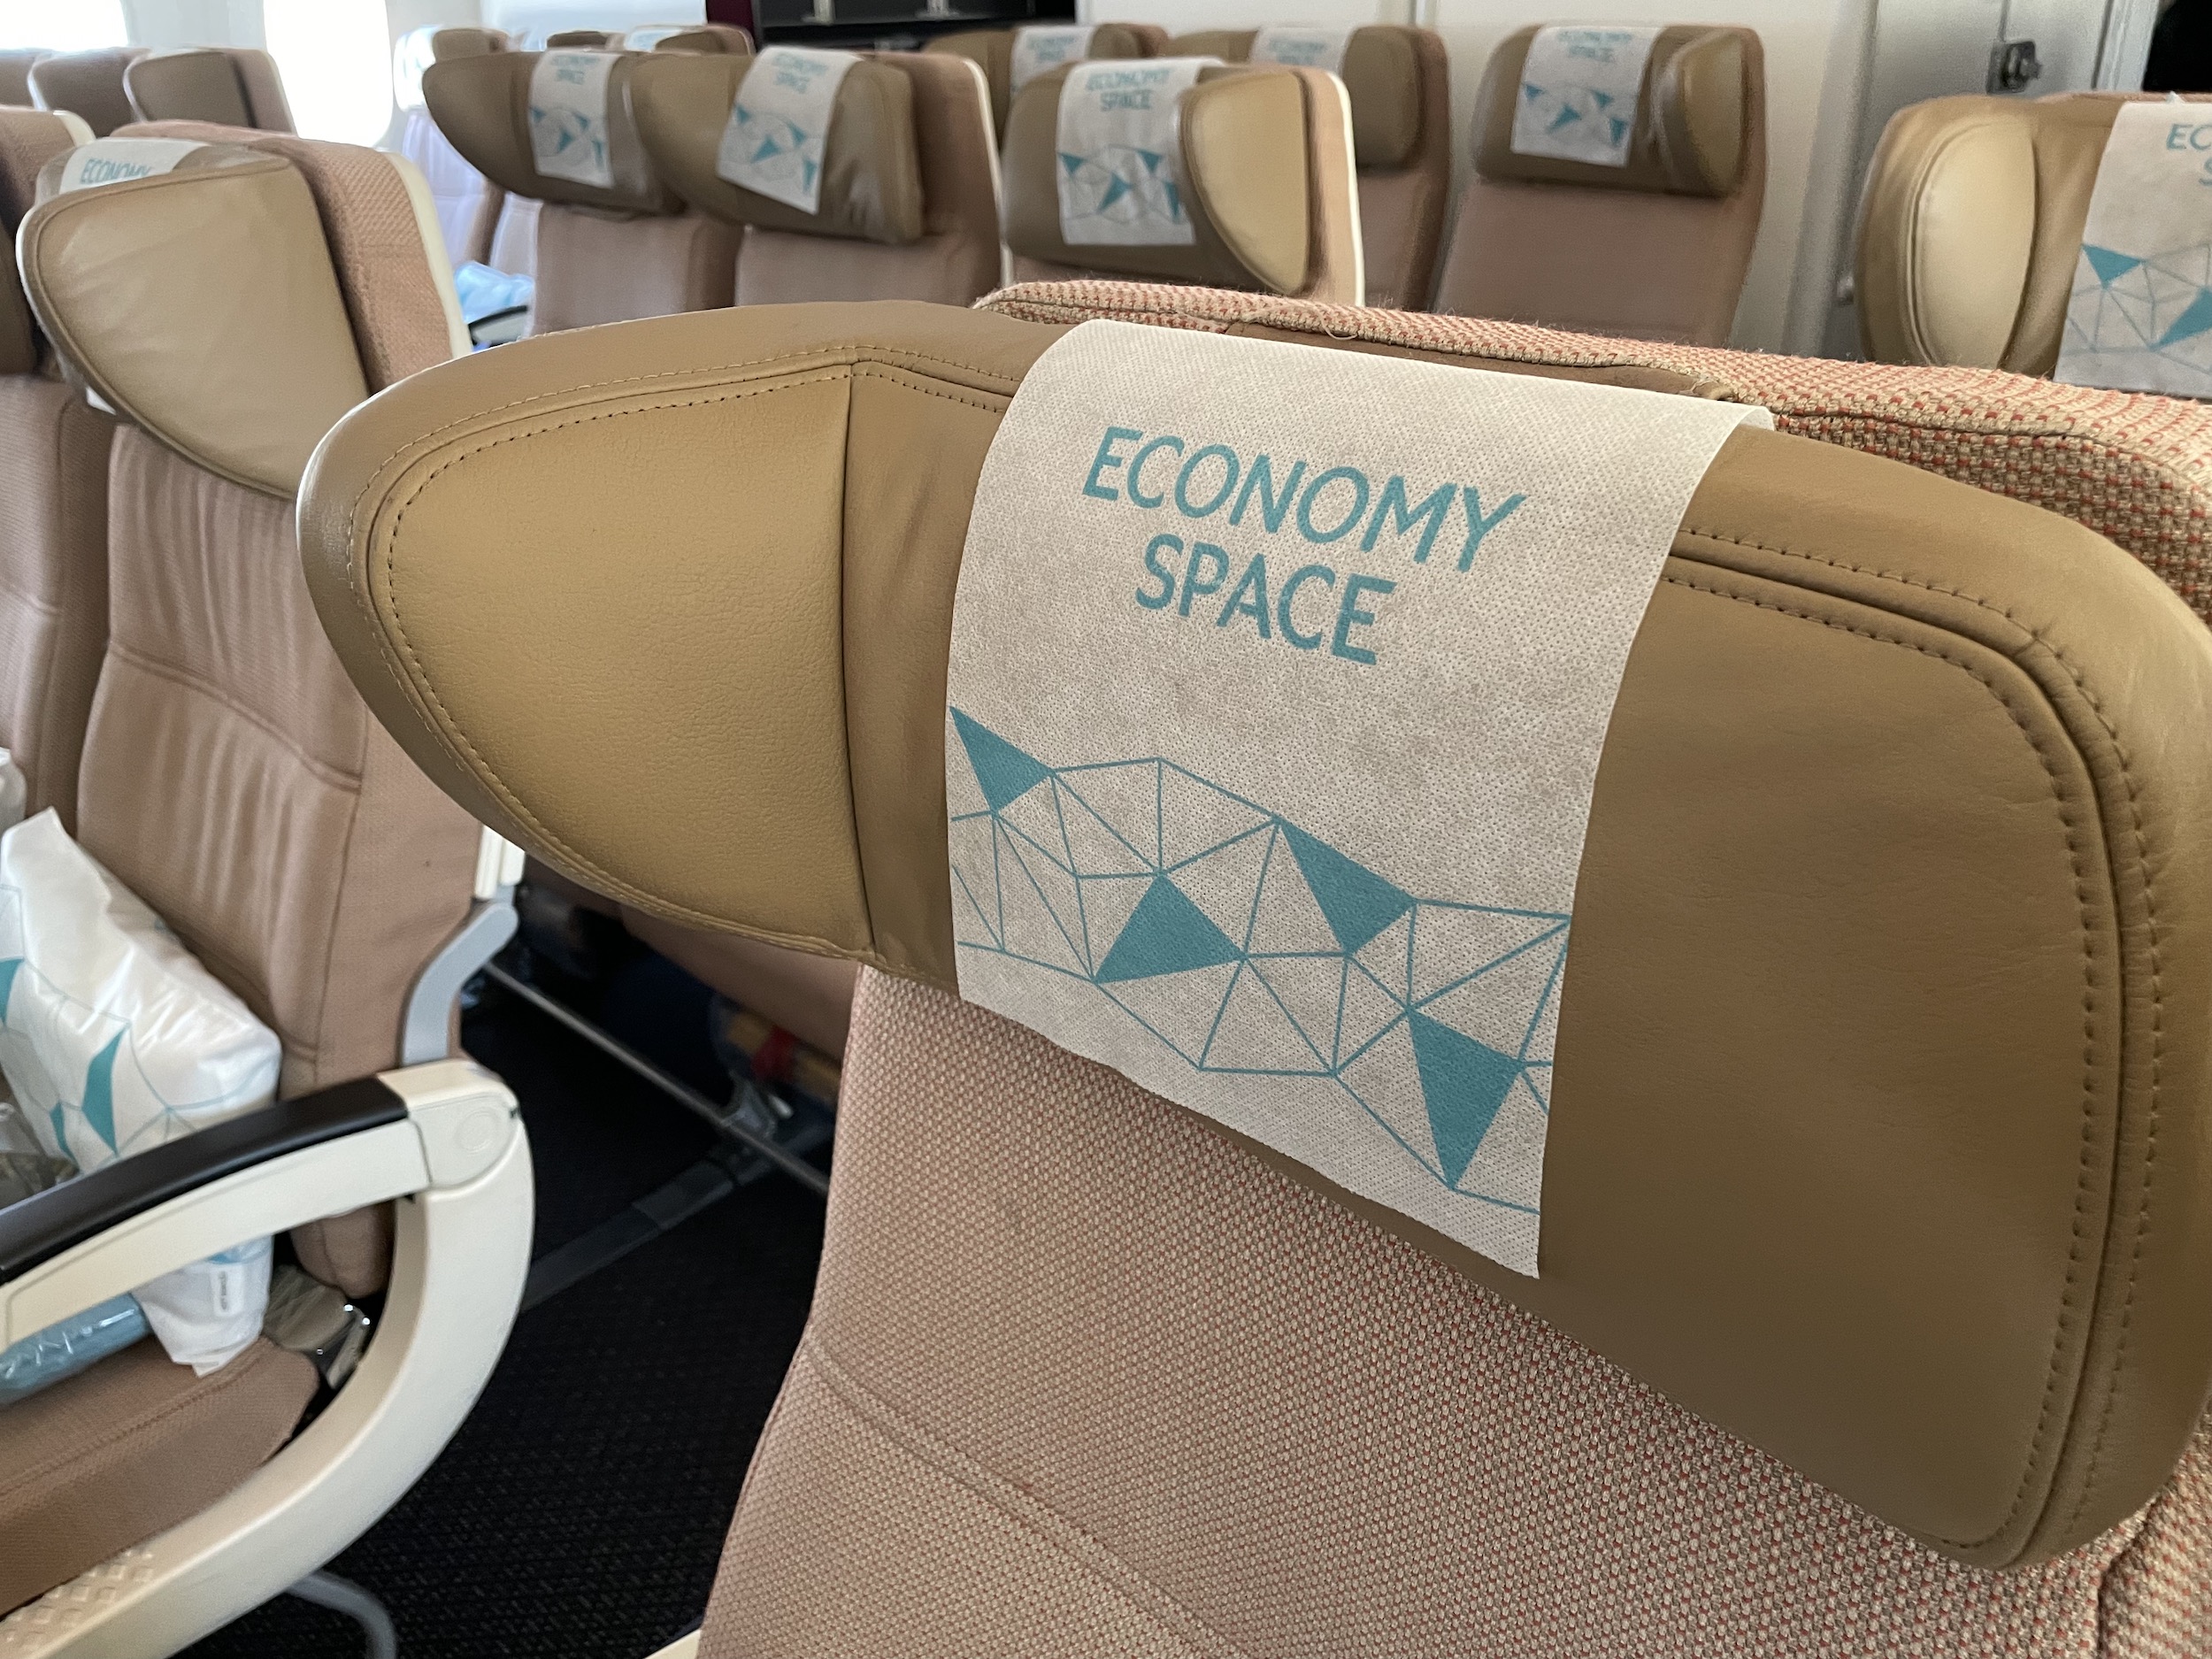 Etihad Economy Space Headrest 787